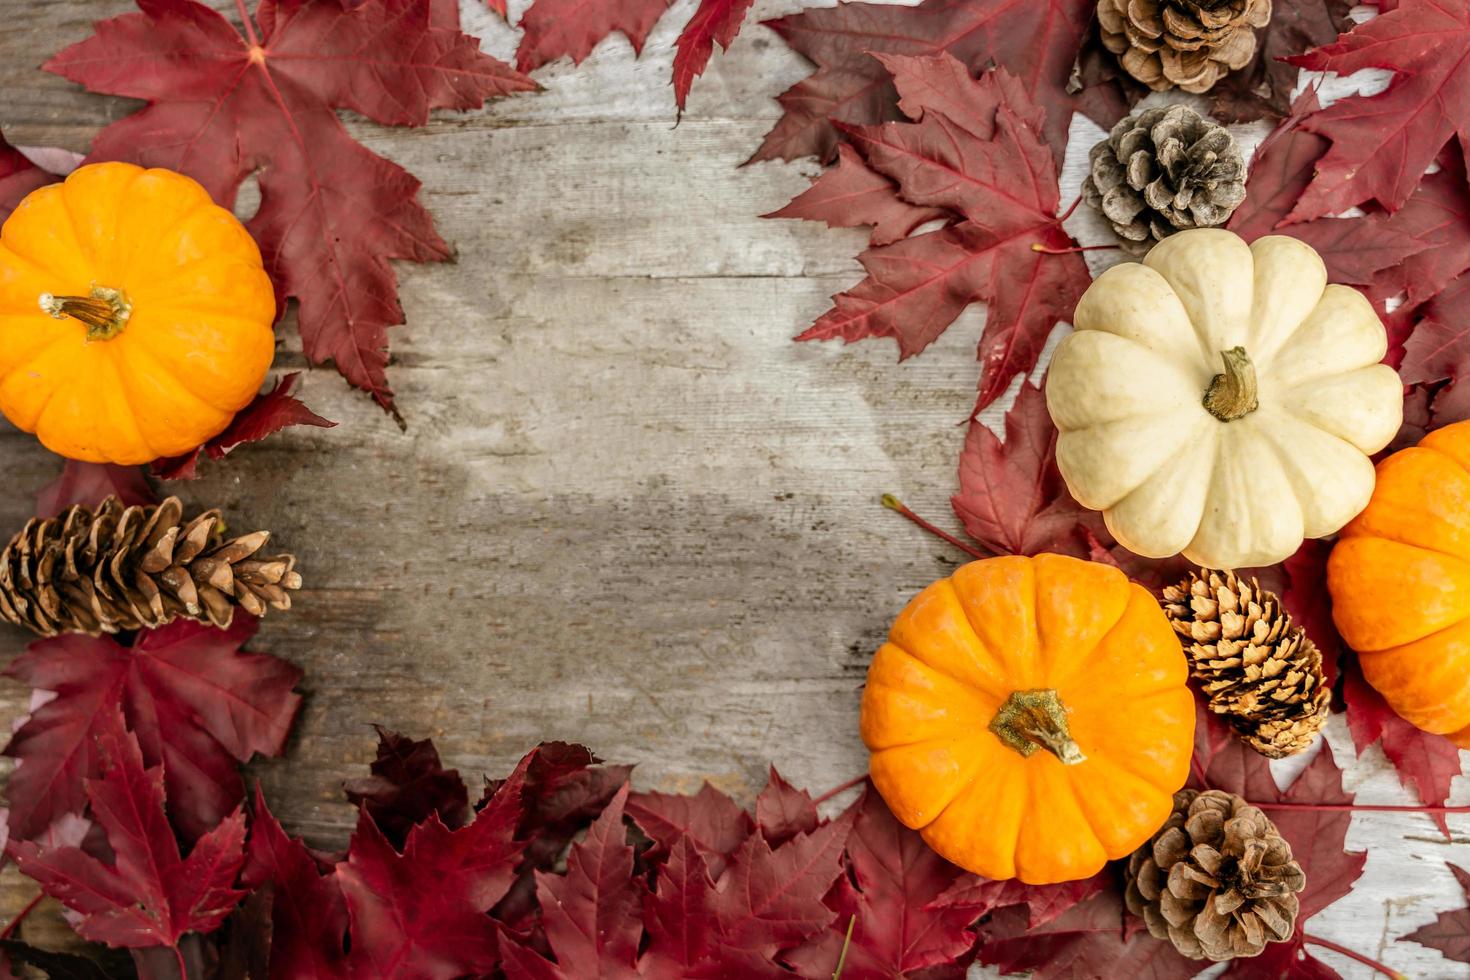 arredamento festivo autunnale da zucche, pini e foglie su uno sfondo di legno. concetto di giorno del ringraziamento o halloween. composizione autunnale piatta con spazio di copia. foto